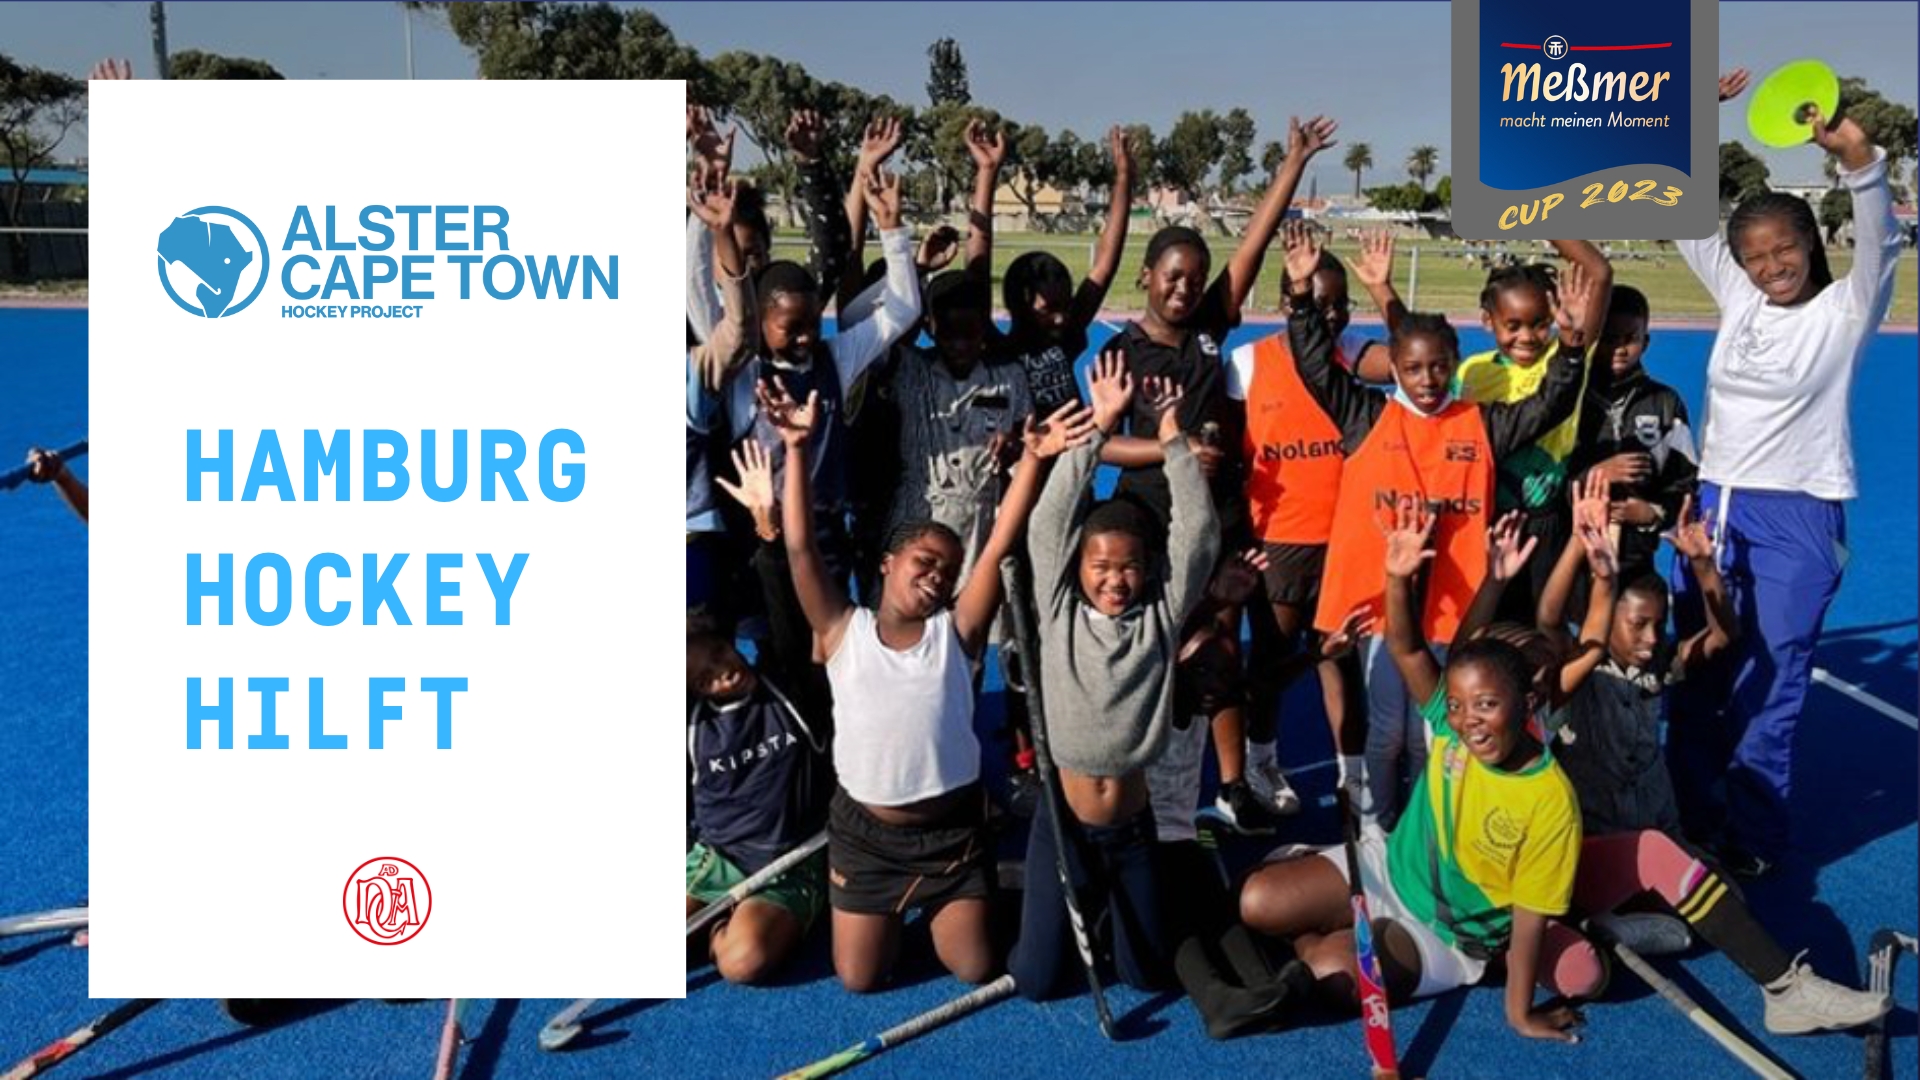 Meßmer Cup and Alster Cape Town Hockey Project Hallenhockeyturnier für Damen und Herren